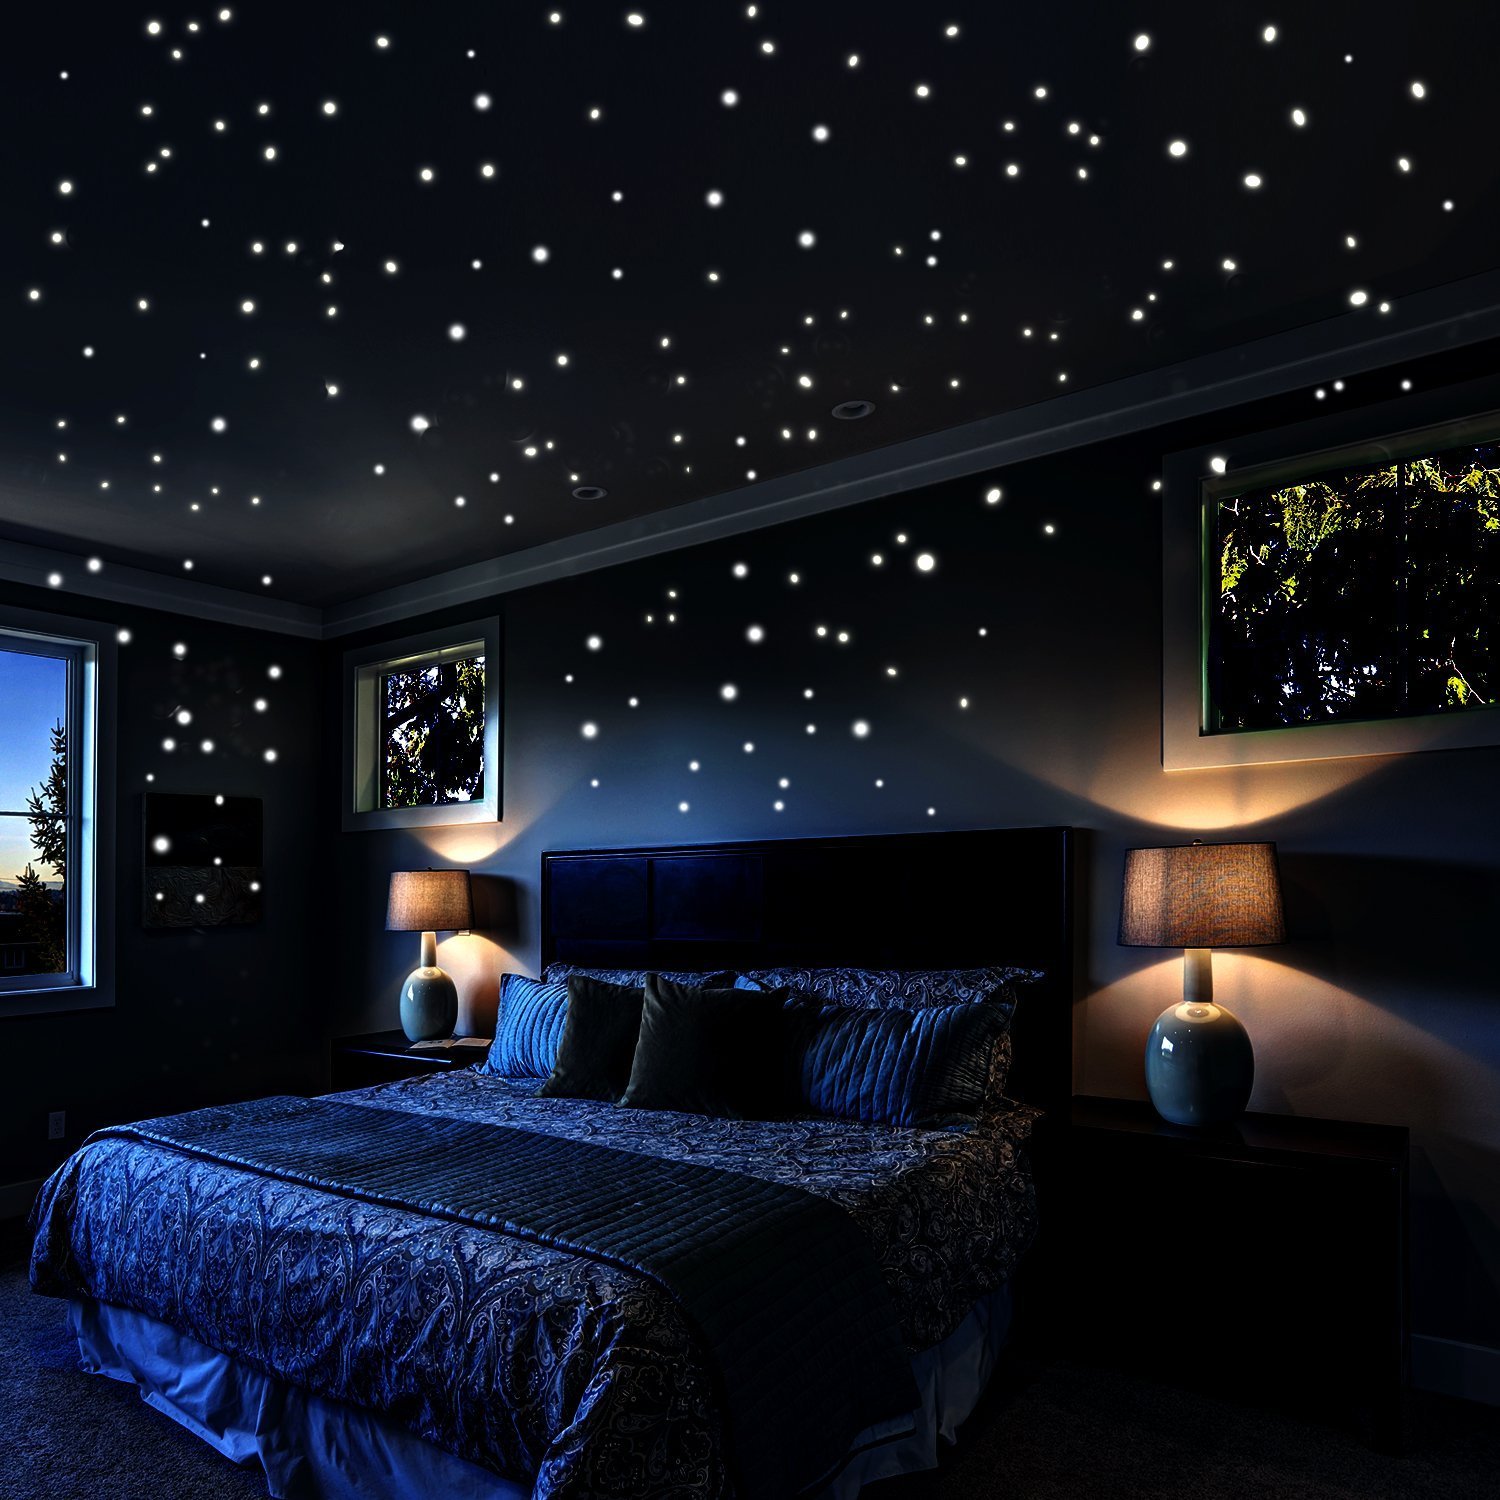 Луна светит в комнату. Потолок Дабл Вижн звездное небо. Натяжной потолок звездное небо. Звездное небо в комнате. Натяжной потолок со звездами.